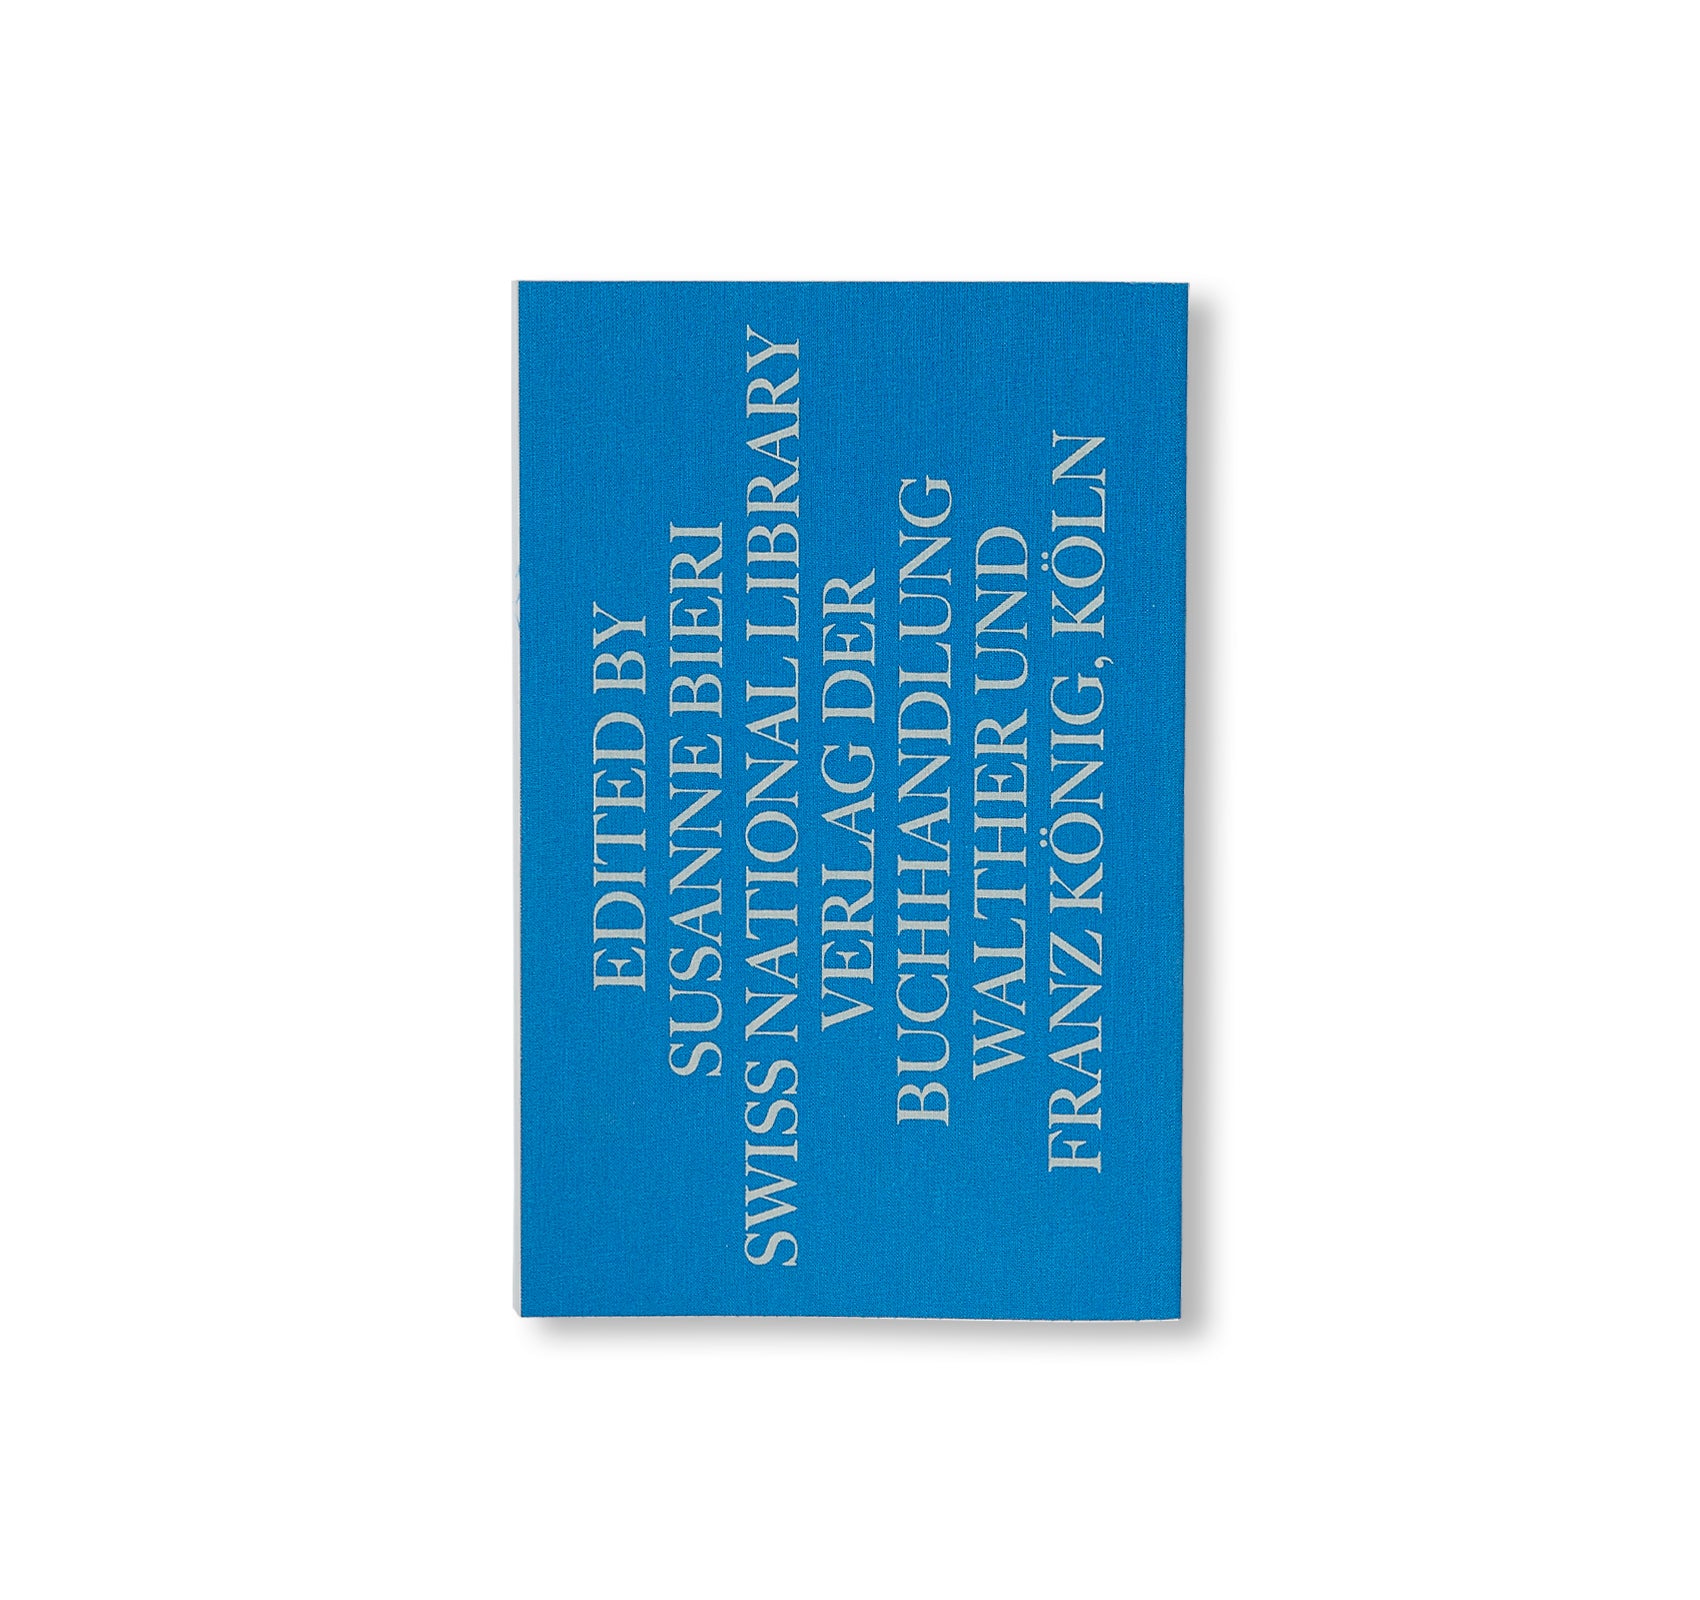 SWISS ARTISTS' BOOKS by Susanne Bieri